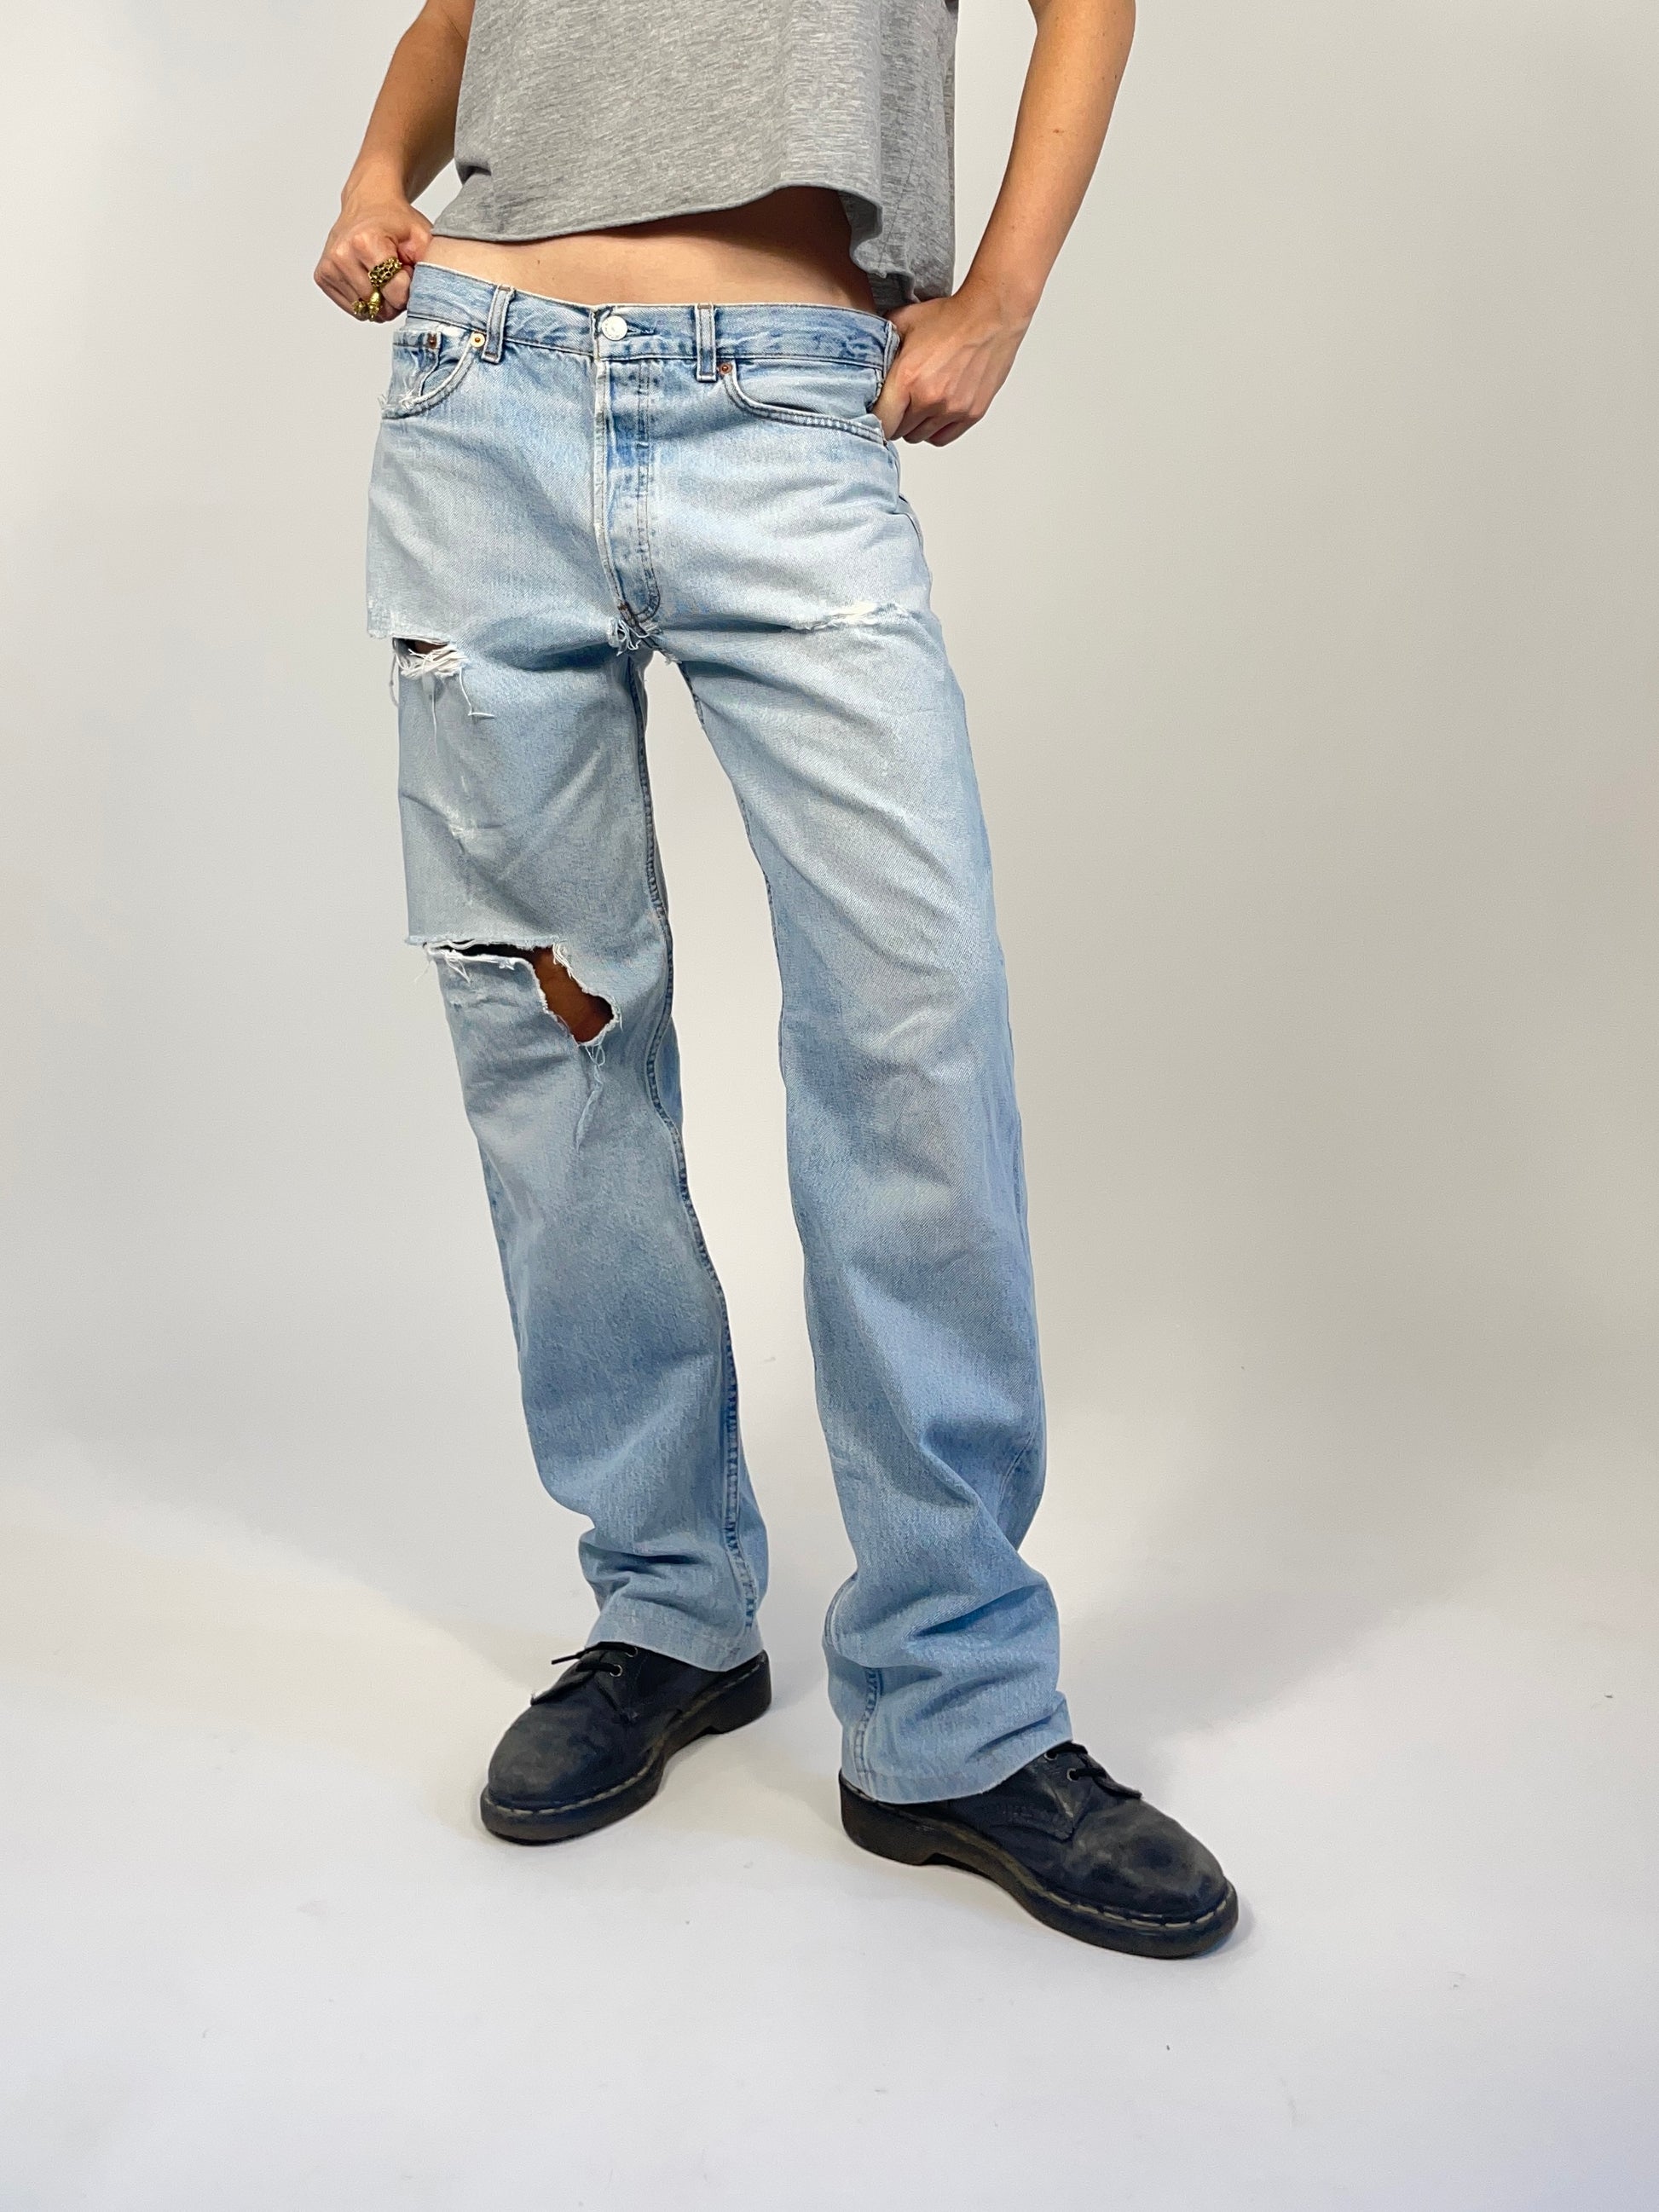 levis-jeans-vintage